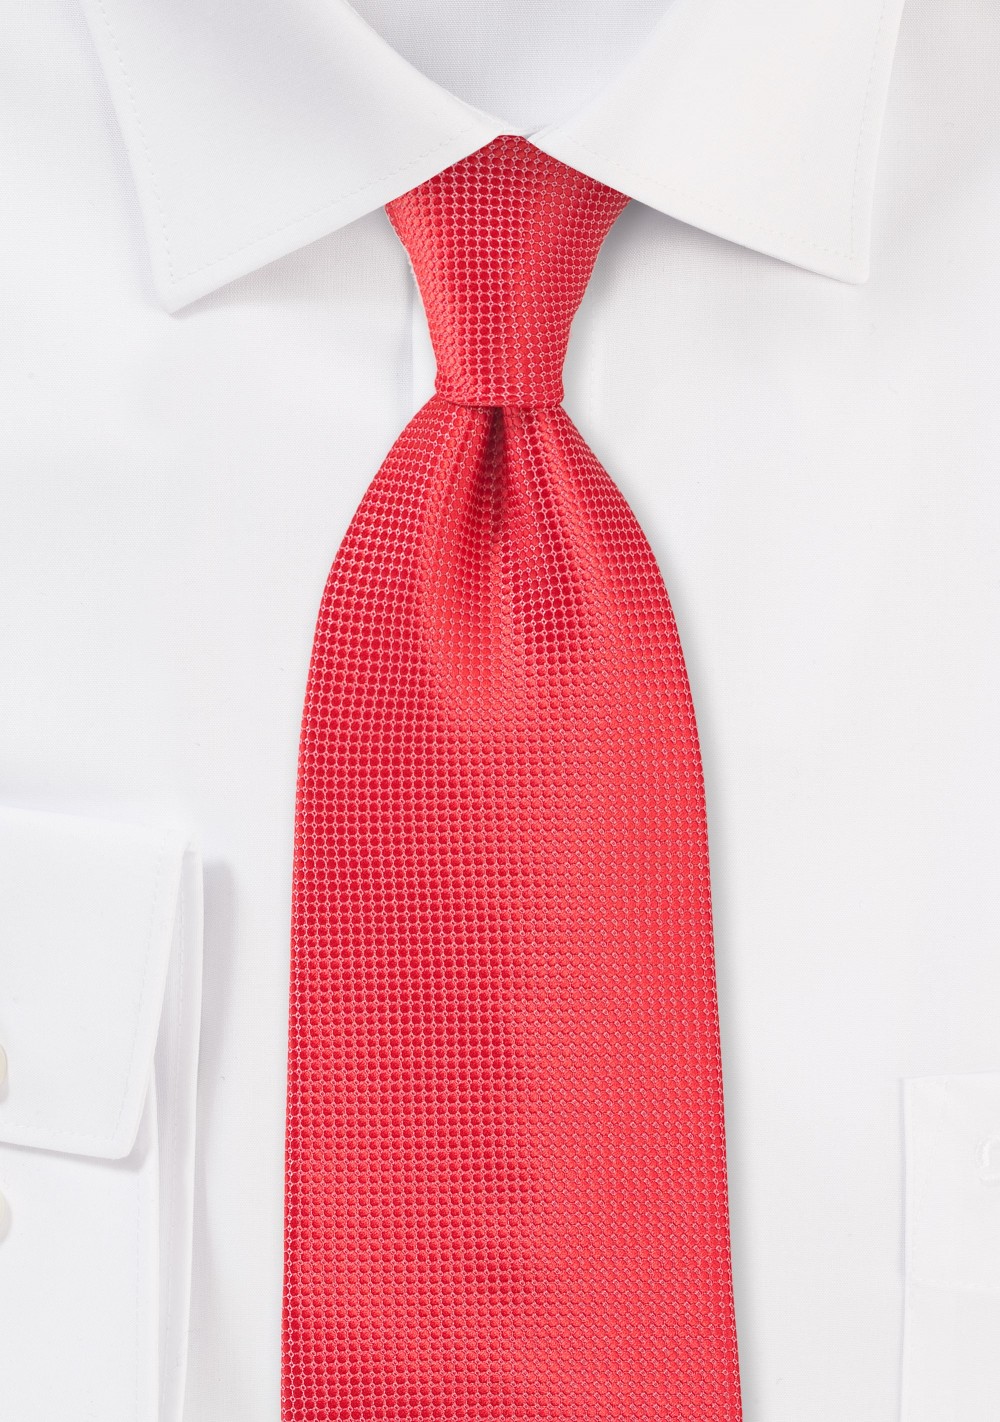 Textured Coral Necktie in Kids Size